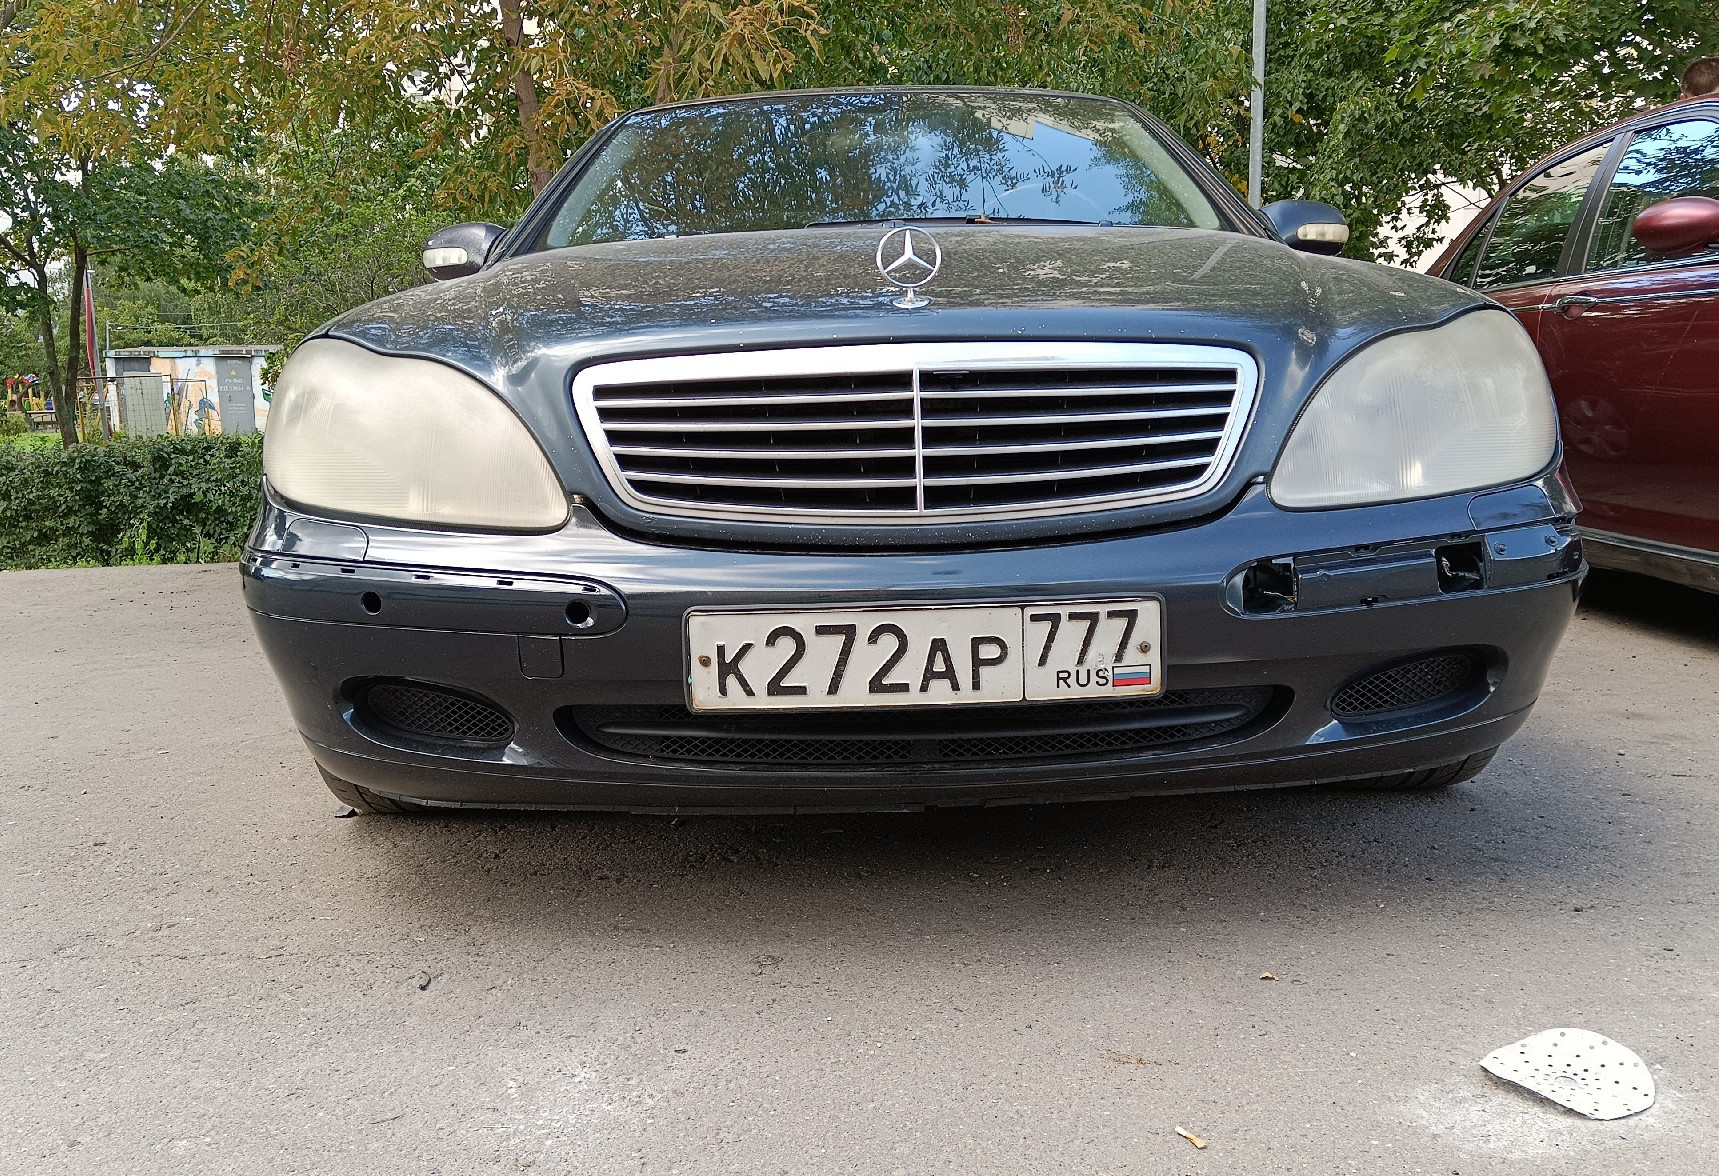 Аренда mercedes-benz s-klass стандарт класса 2002 года в городе Москва Люблино от 3300 руб./сутки, задний привод, двигатель: бензин, объем 3.2 литра, ОСАГО (Мультидрайв), без водителя, недорого, вид 7 - RentRide